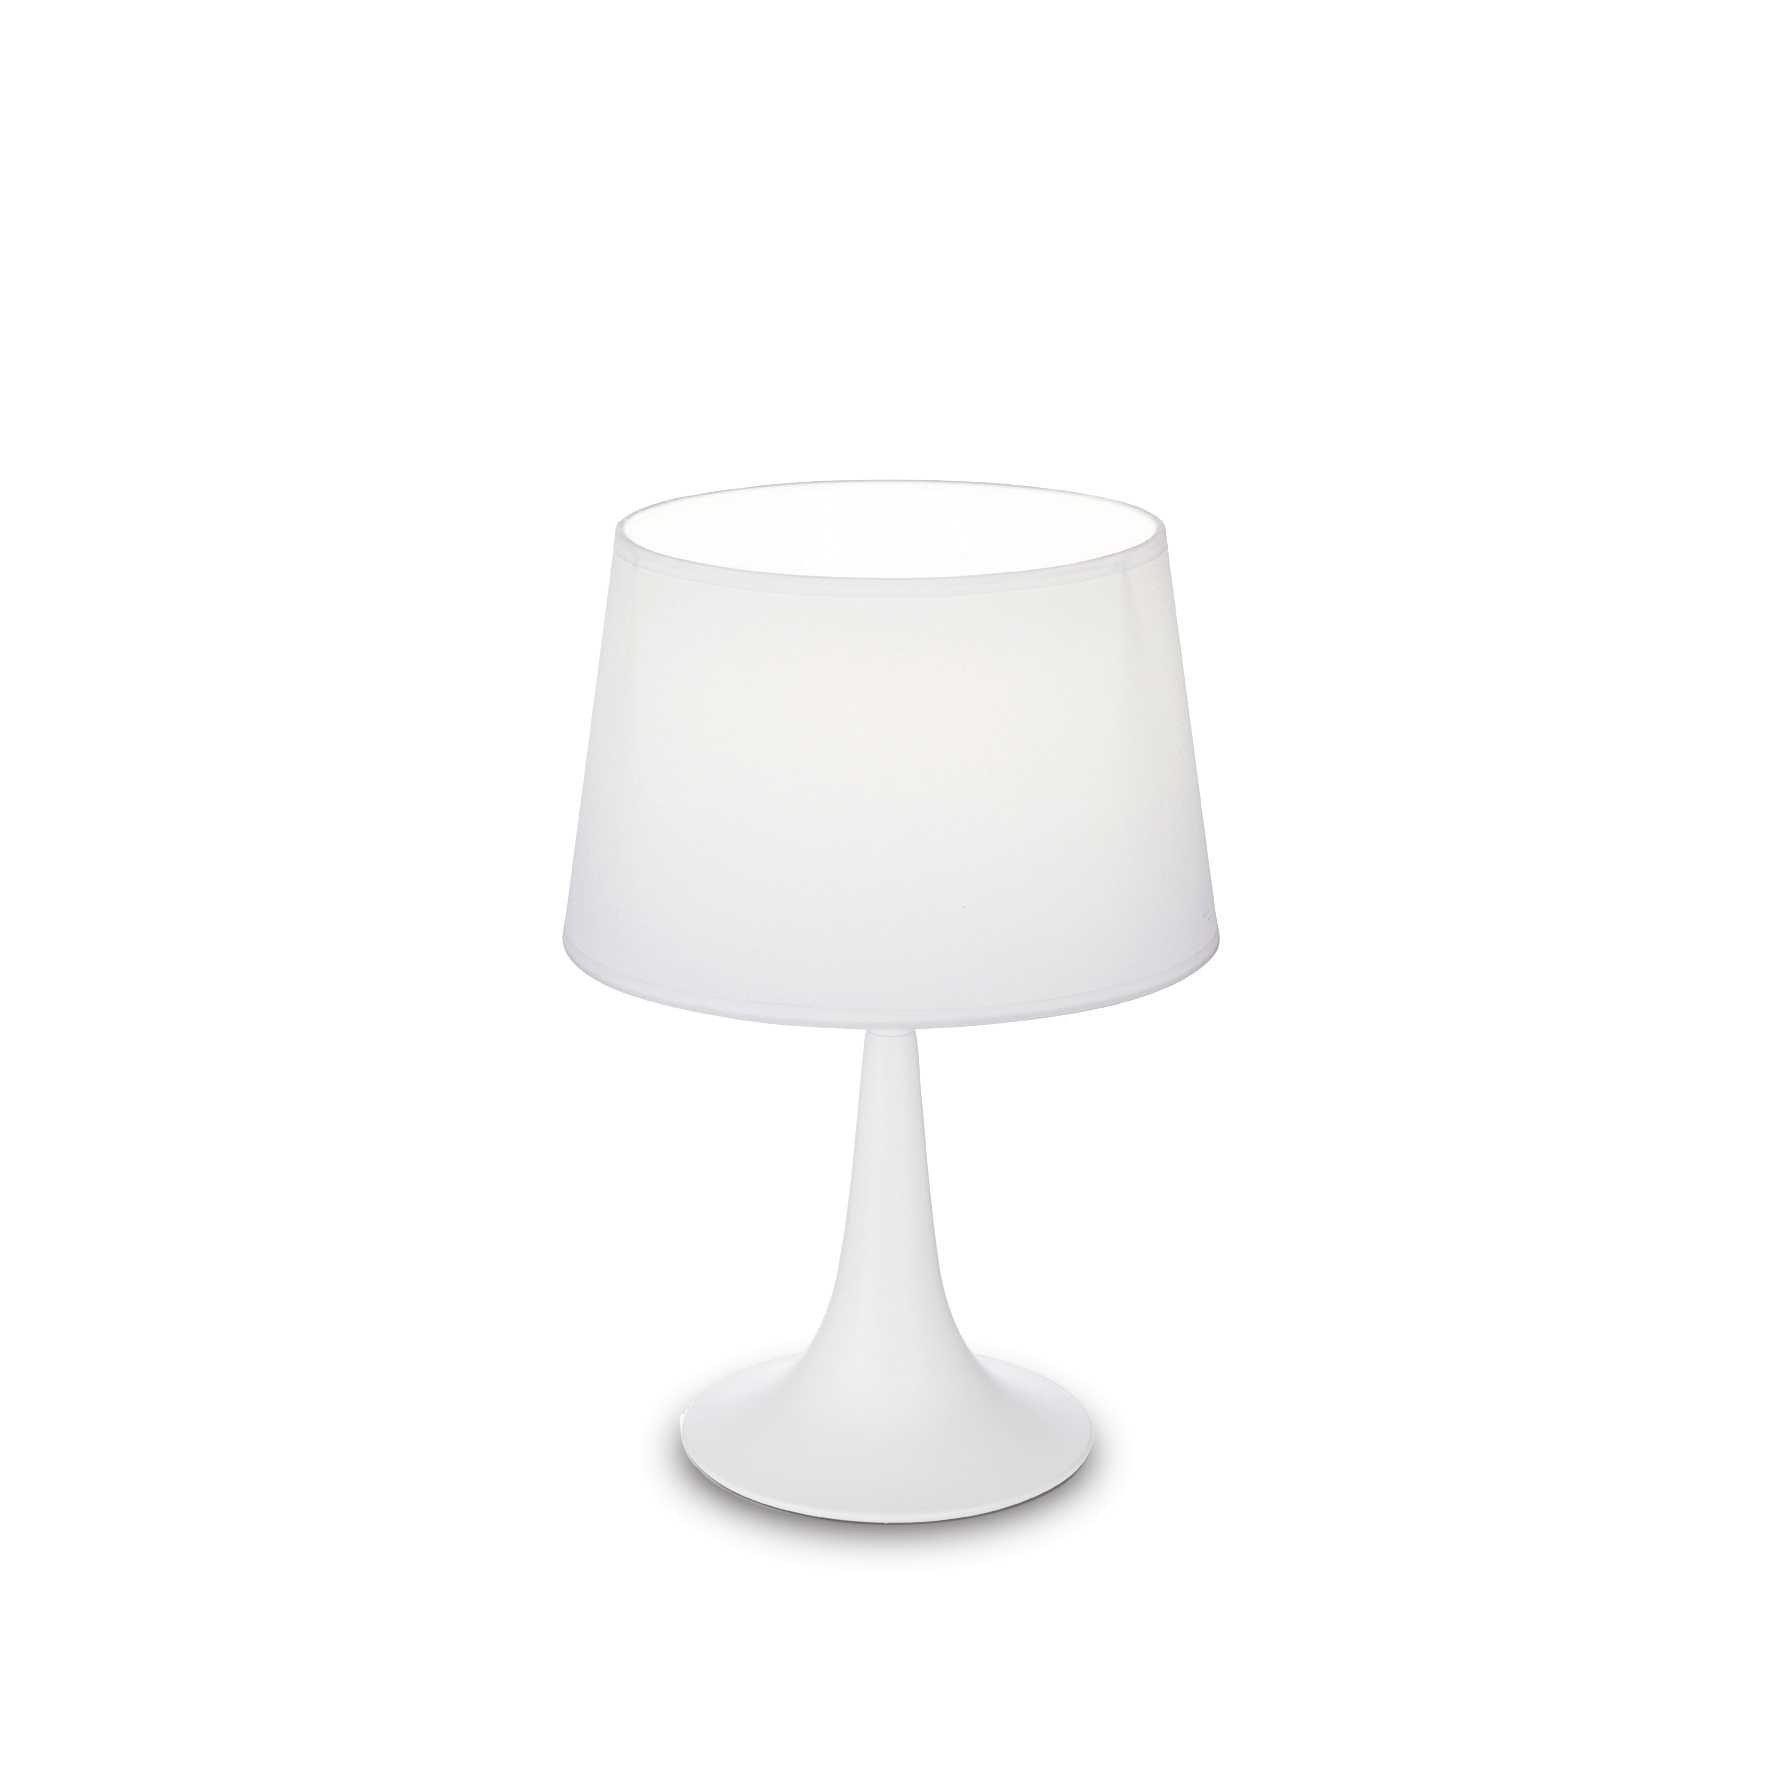 London 1 Light Small Table Lamp White E27